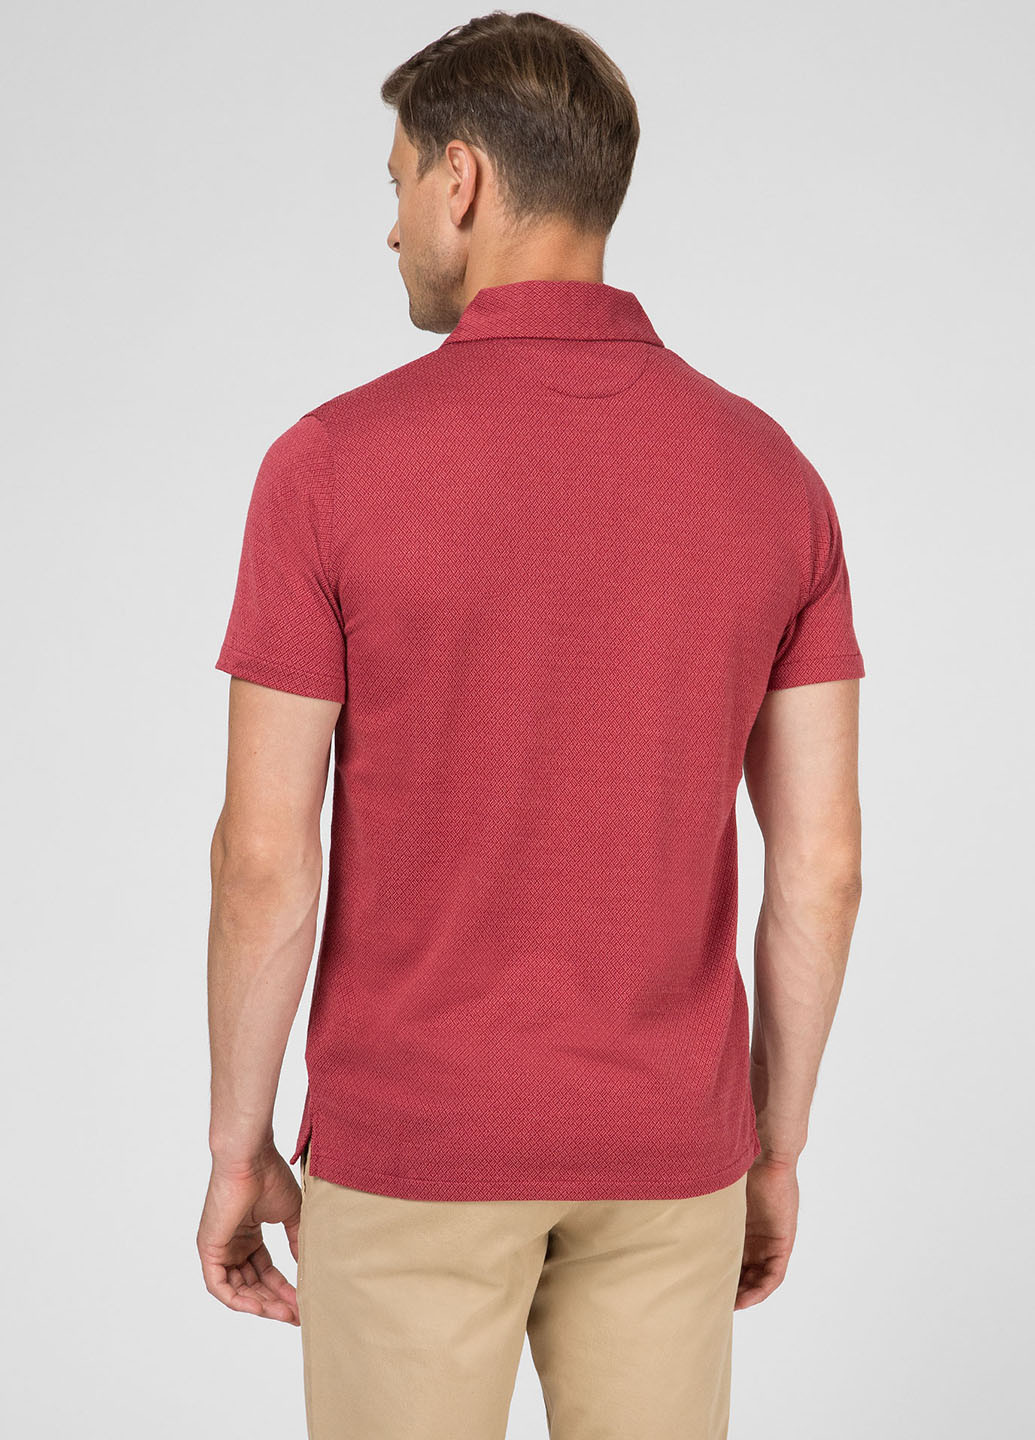 Бордовая футболка-поло для мужчин Gant однотонная